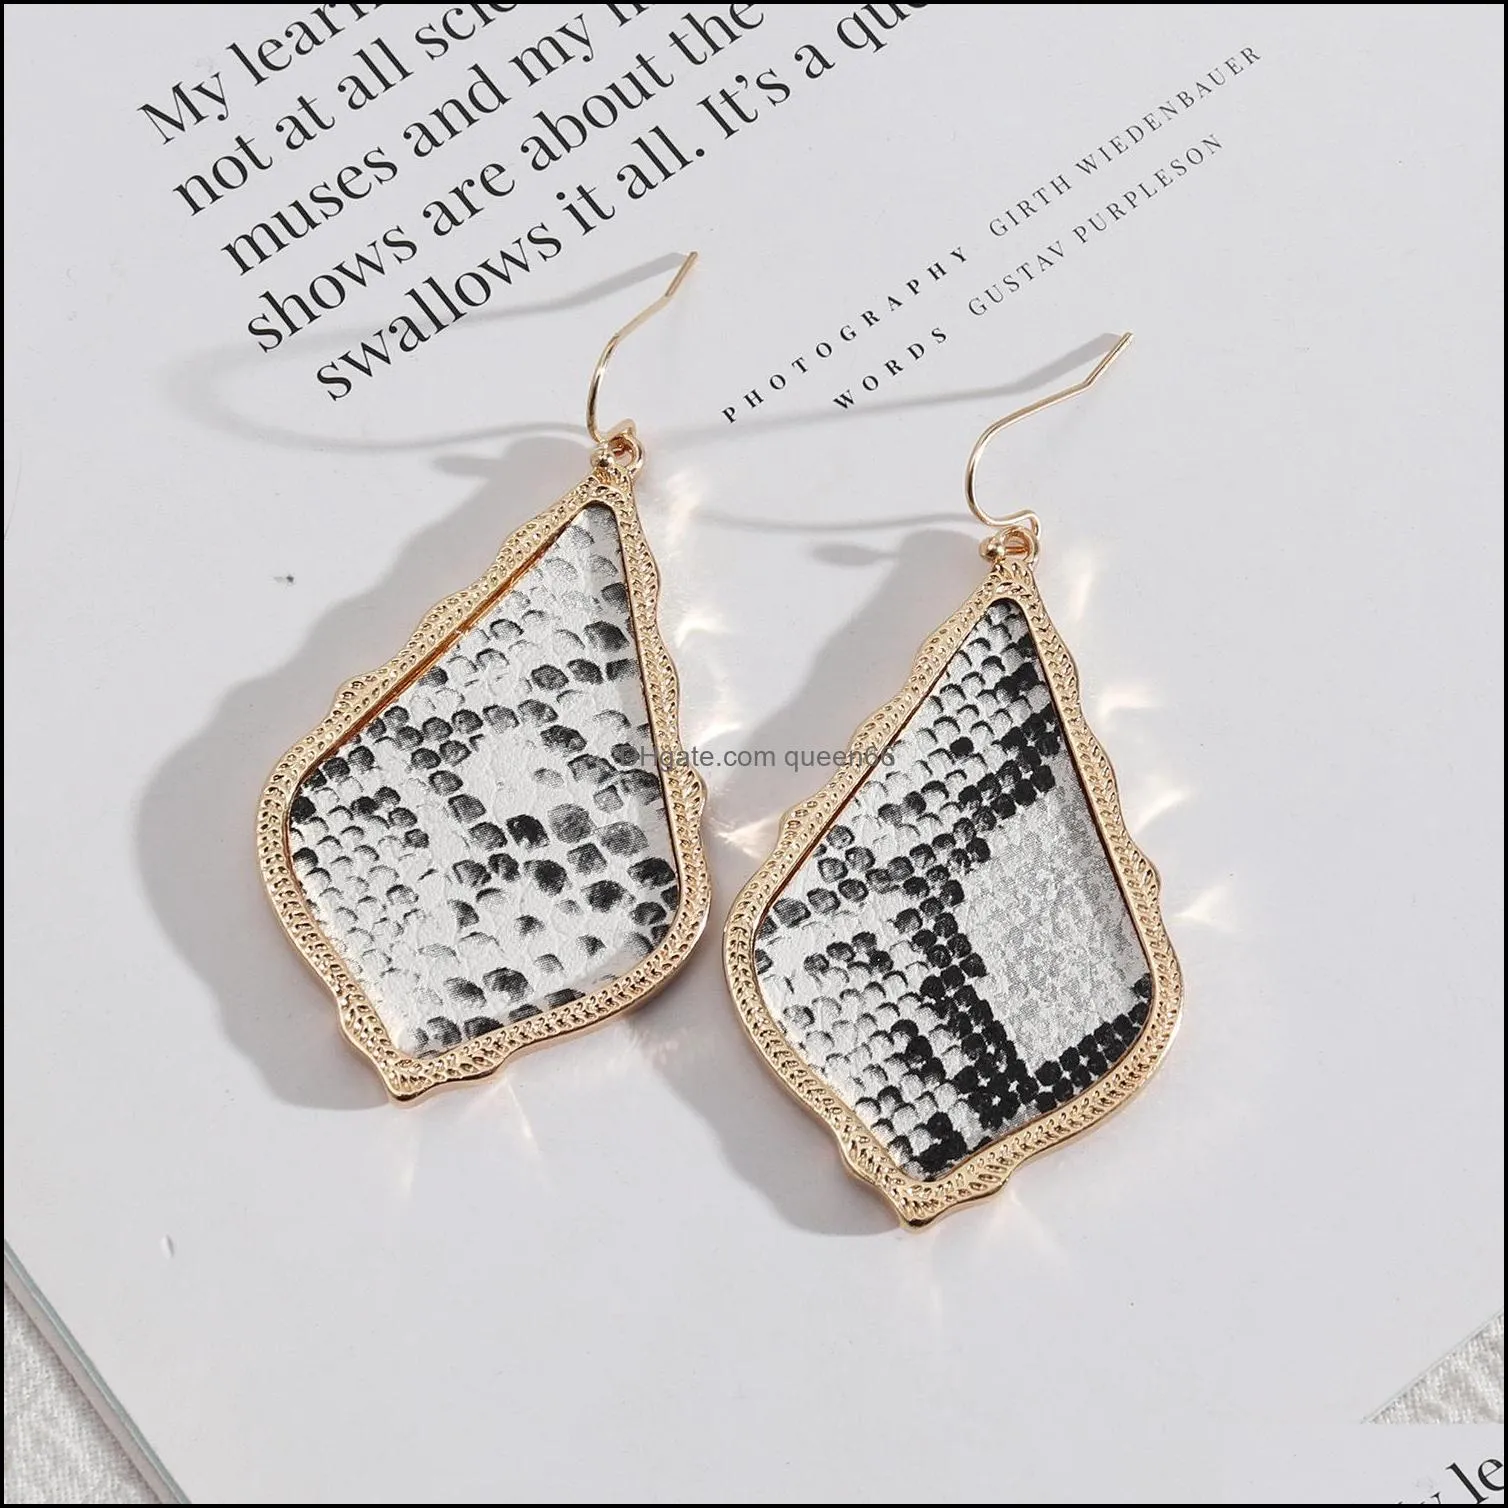 teardrop frame inspired abalone shell papper leopard leather charms earrings snakeskin pu geometric women jewelry